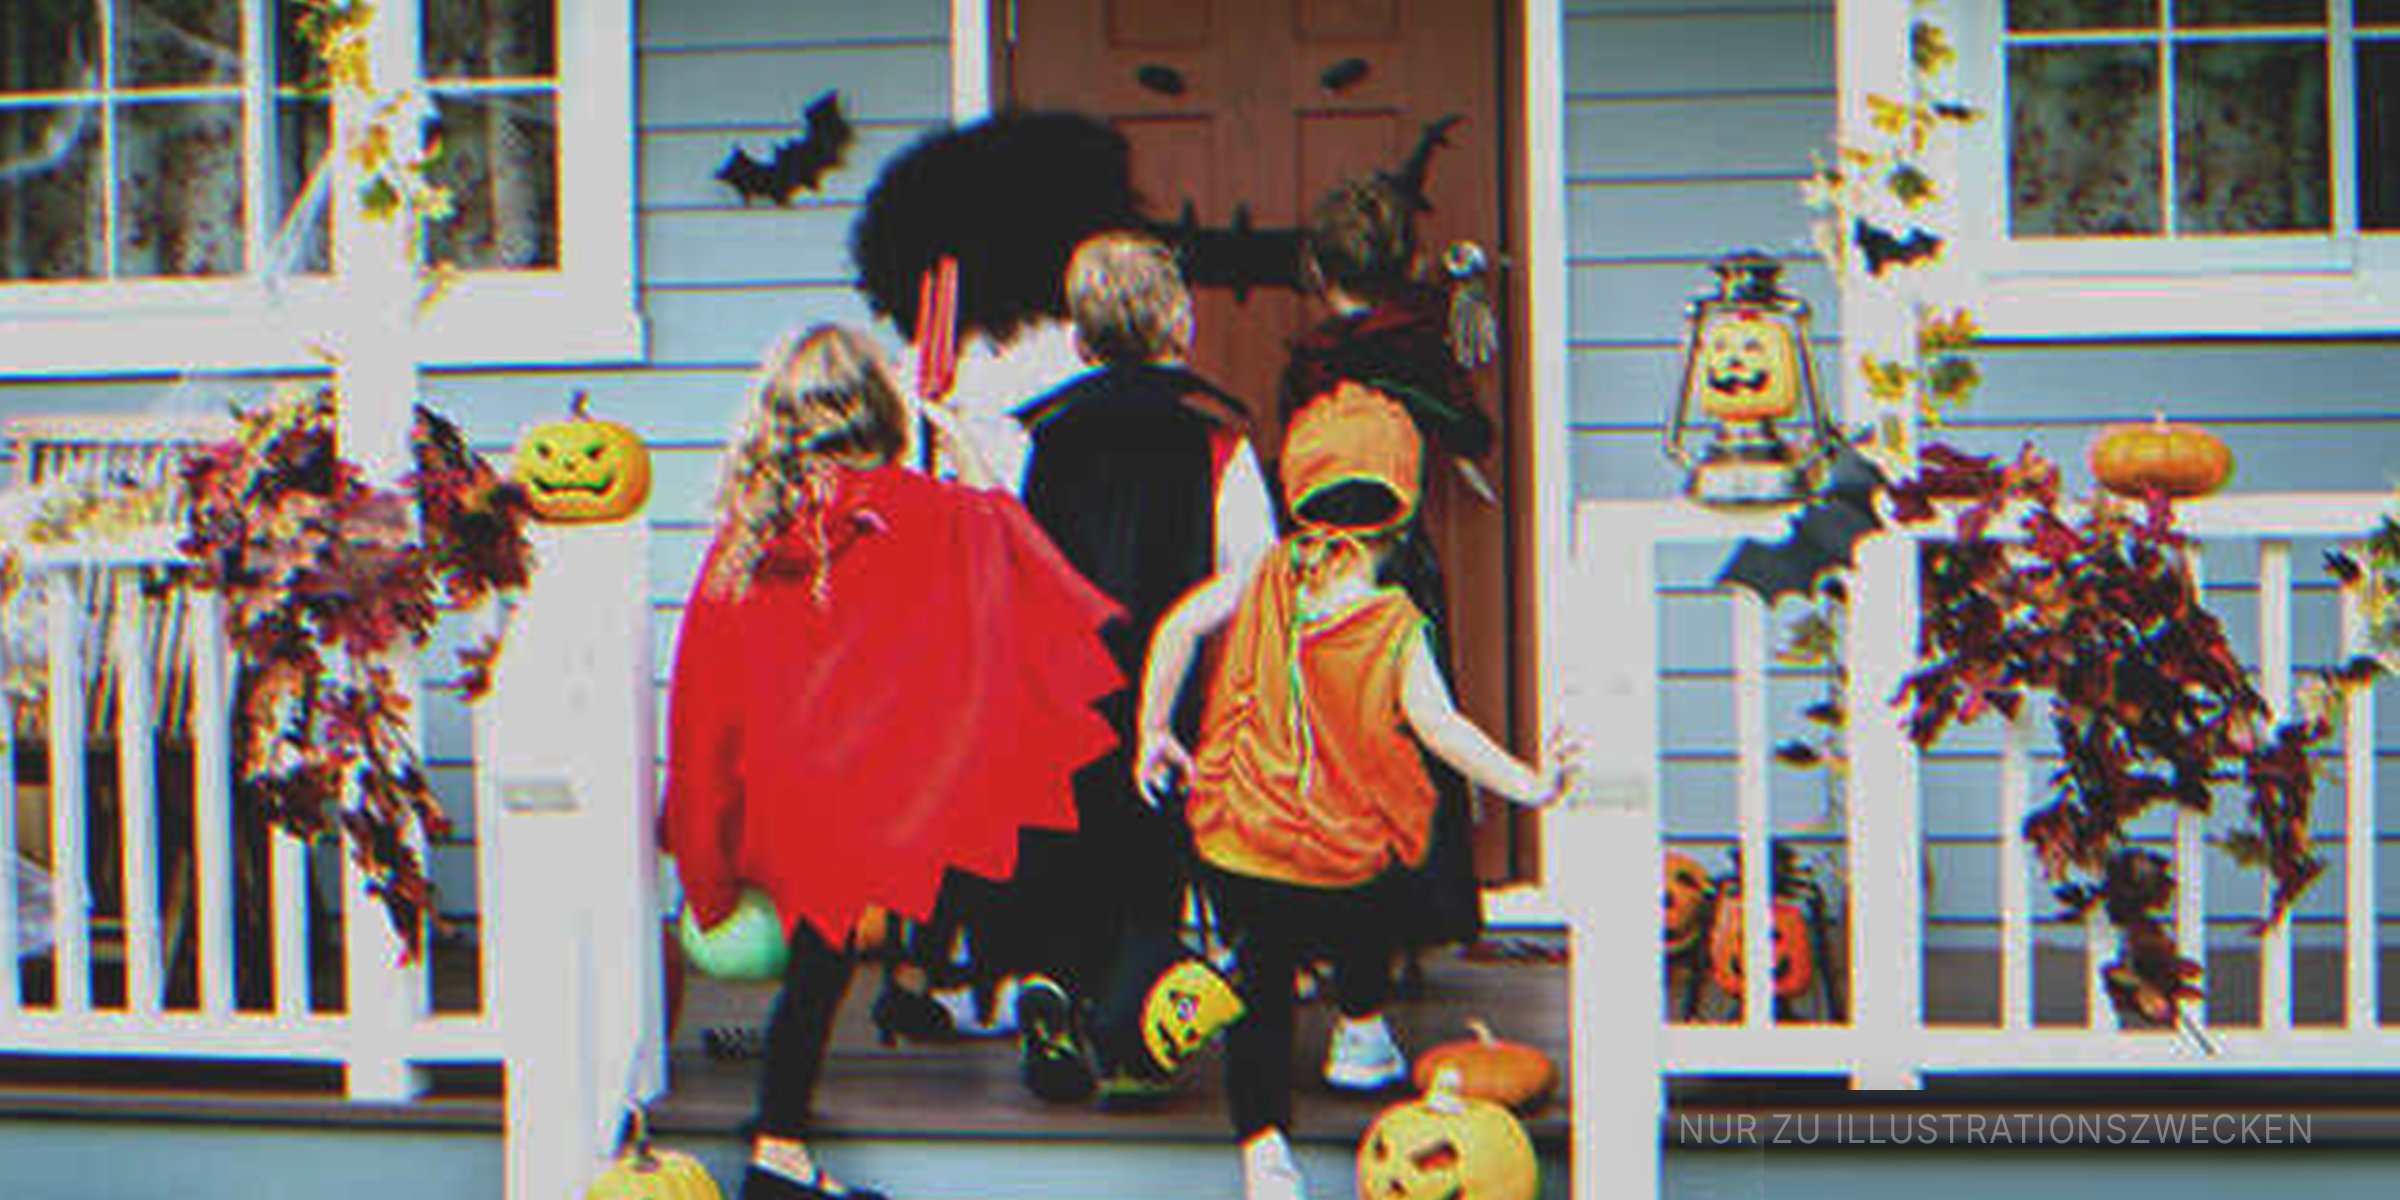 Süßes oder Saures für Kinder an Halloween | Quelle: Shutterstock